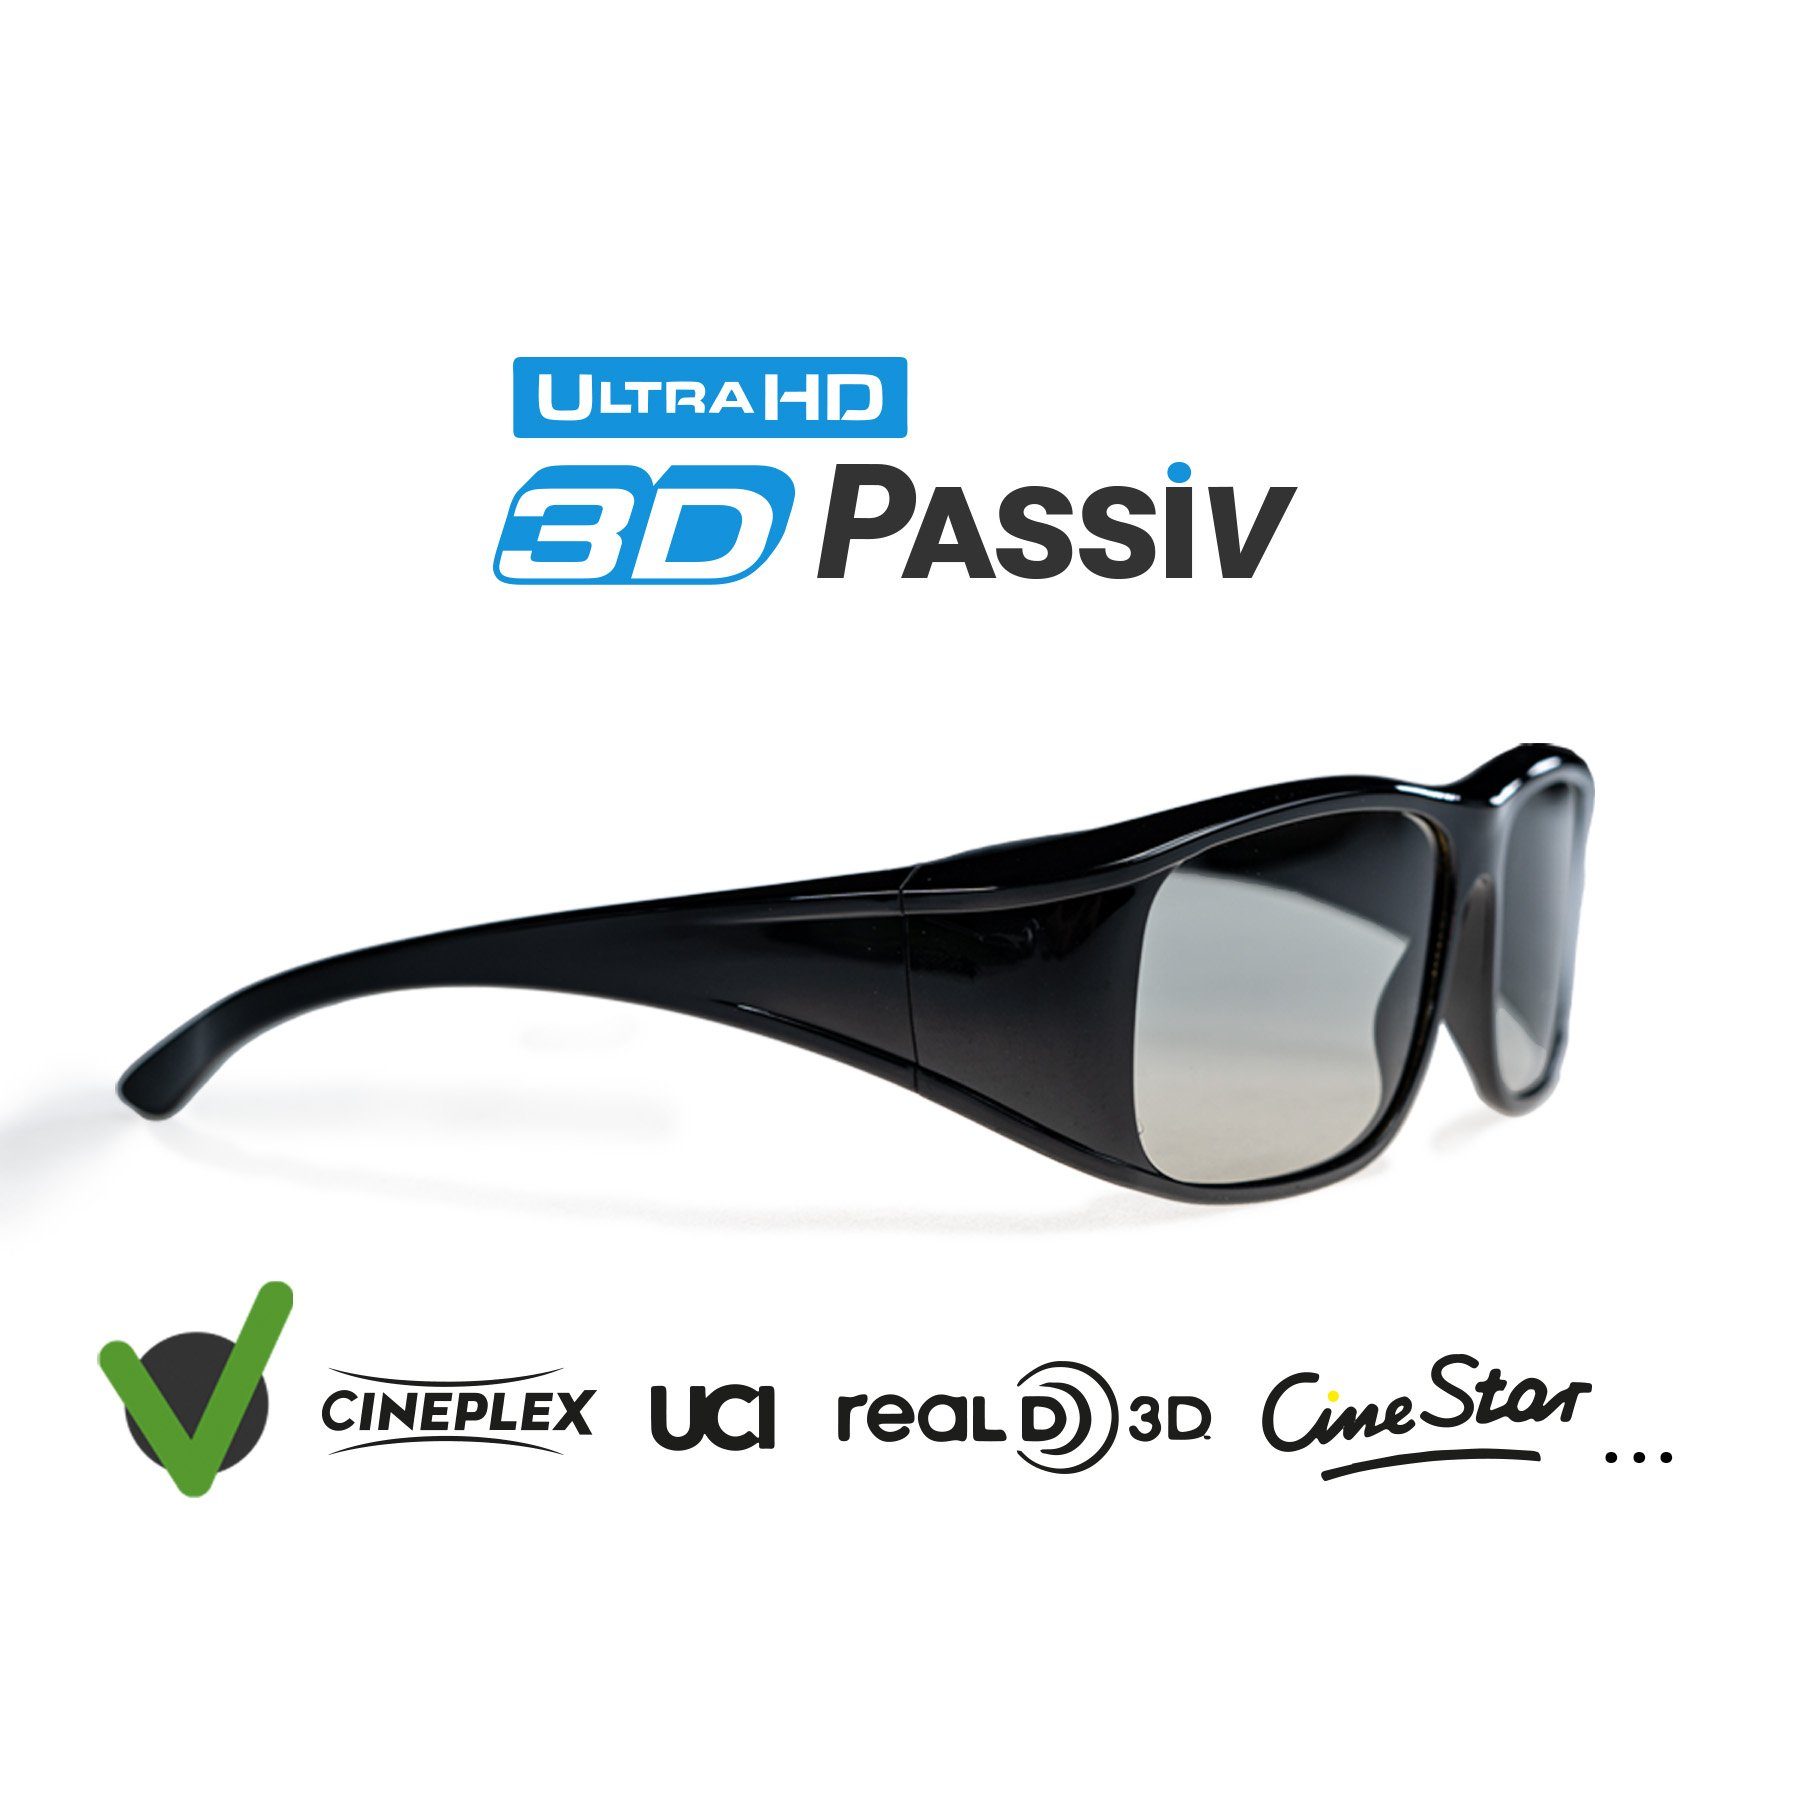 Hi-SHOCK für passive 3D-Brille und Kinos 3D 3D TVs öffentliche Passiv,